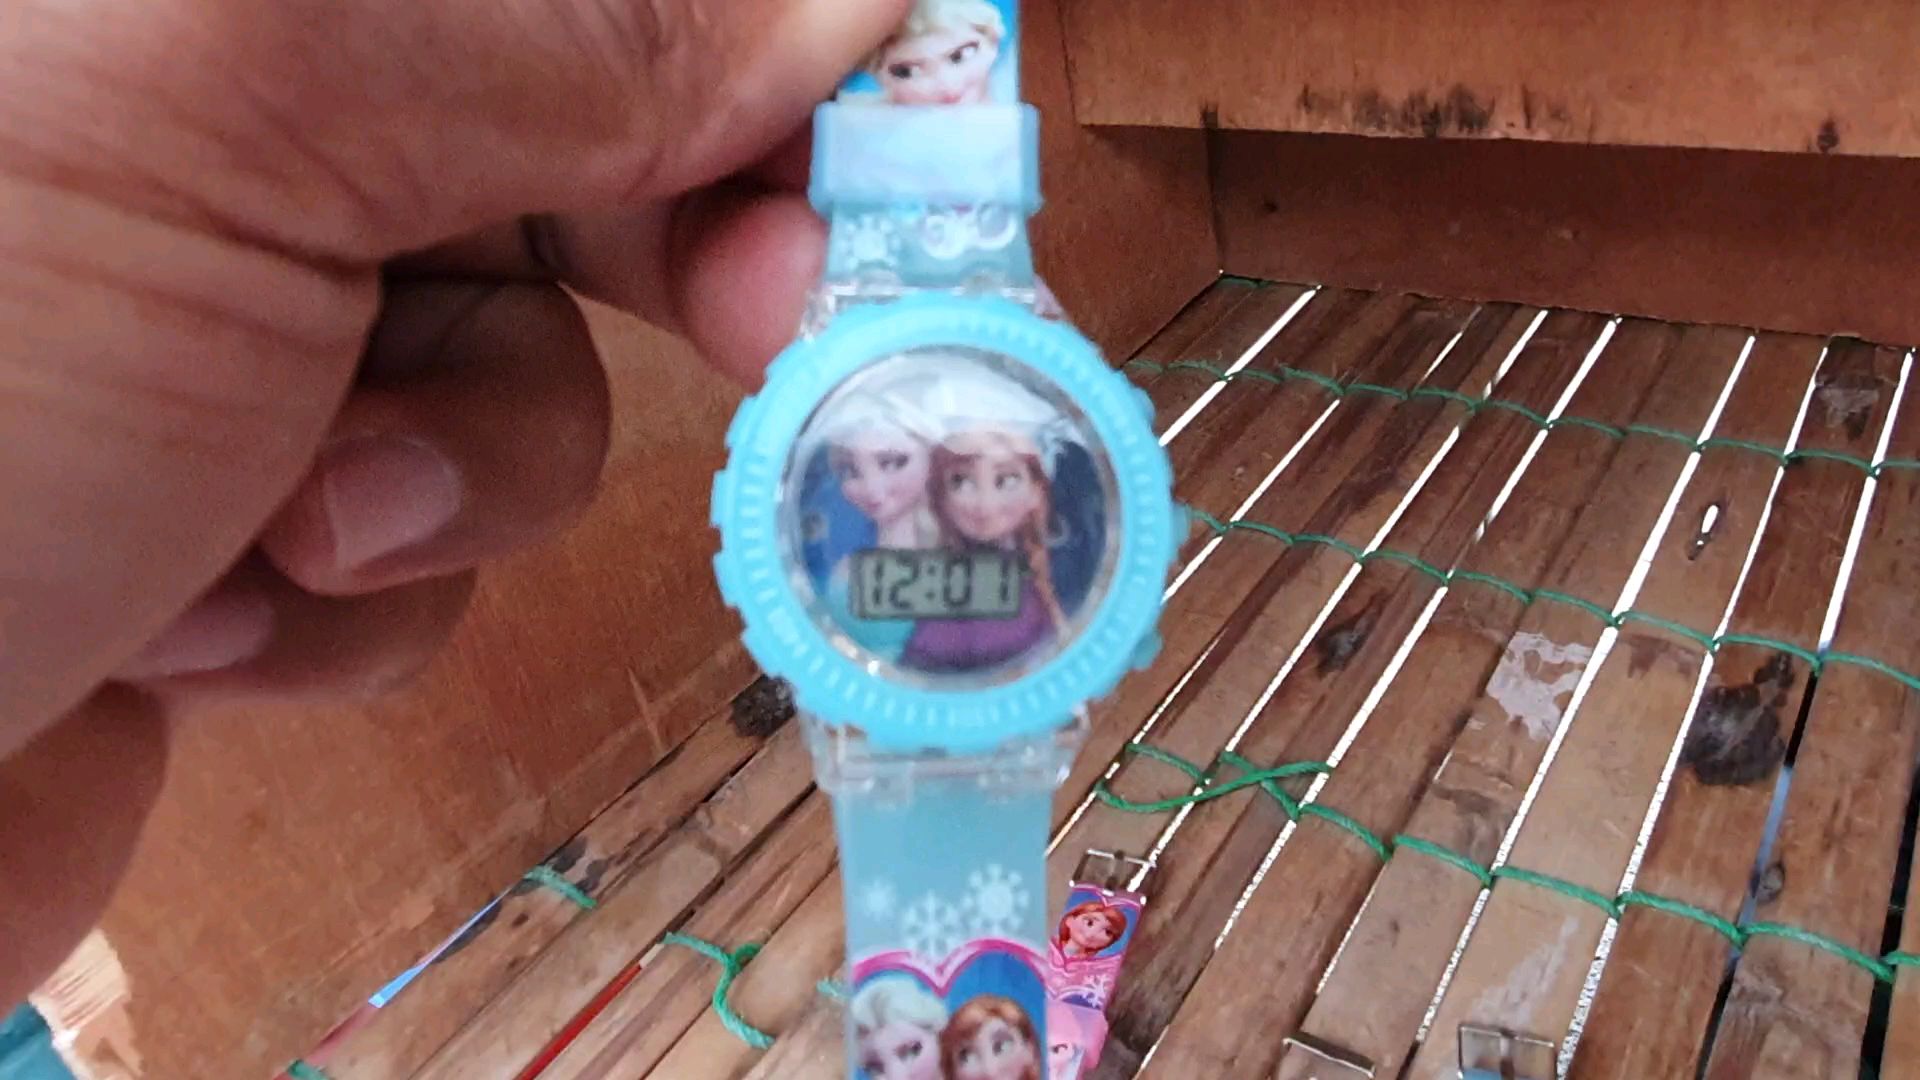 นาฬิกาการ์ตูน-frozen